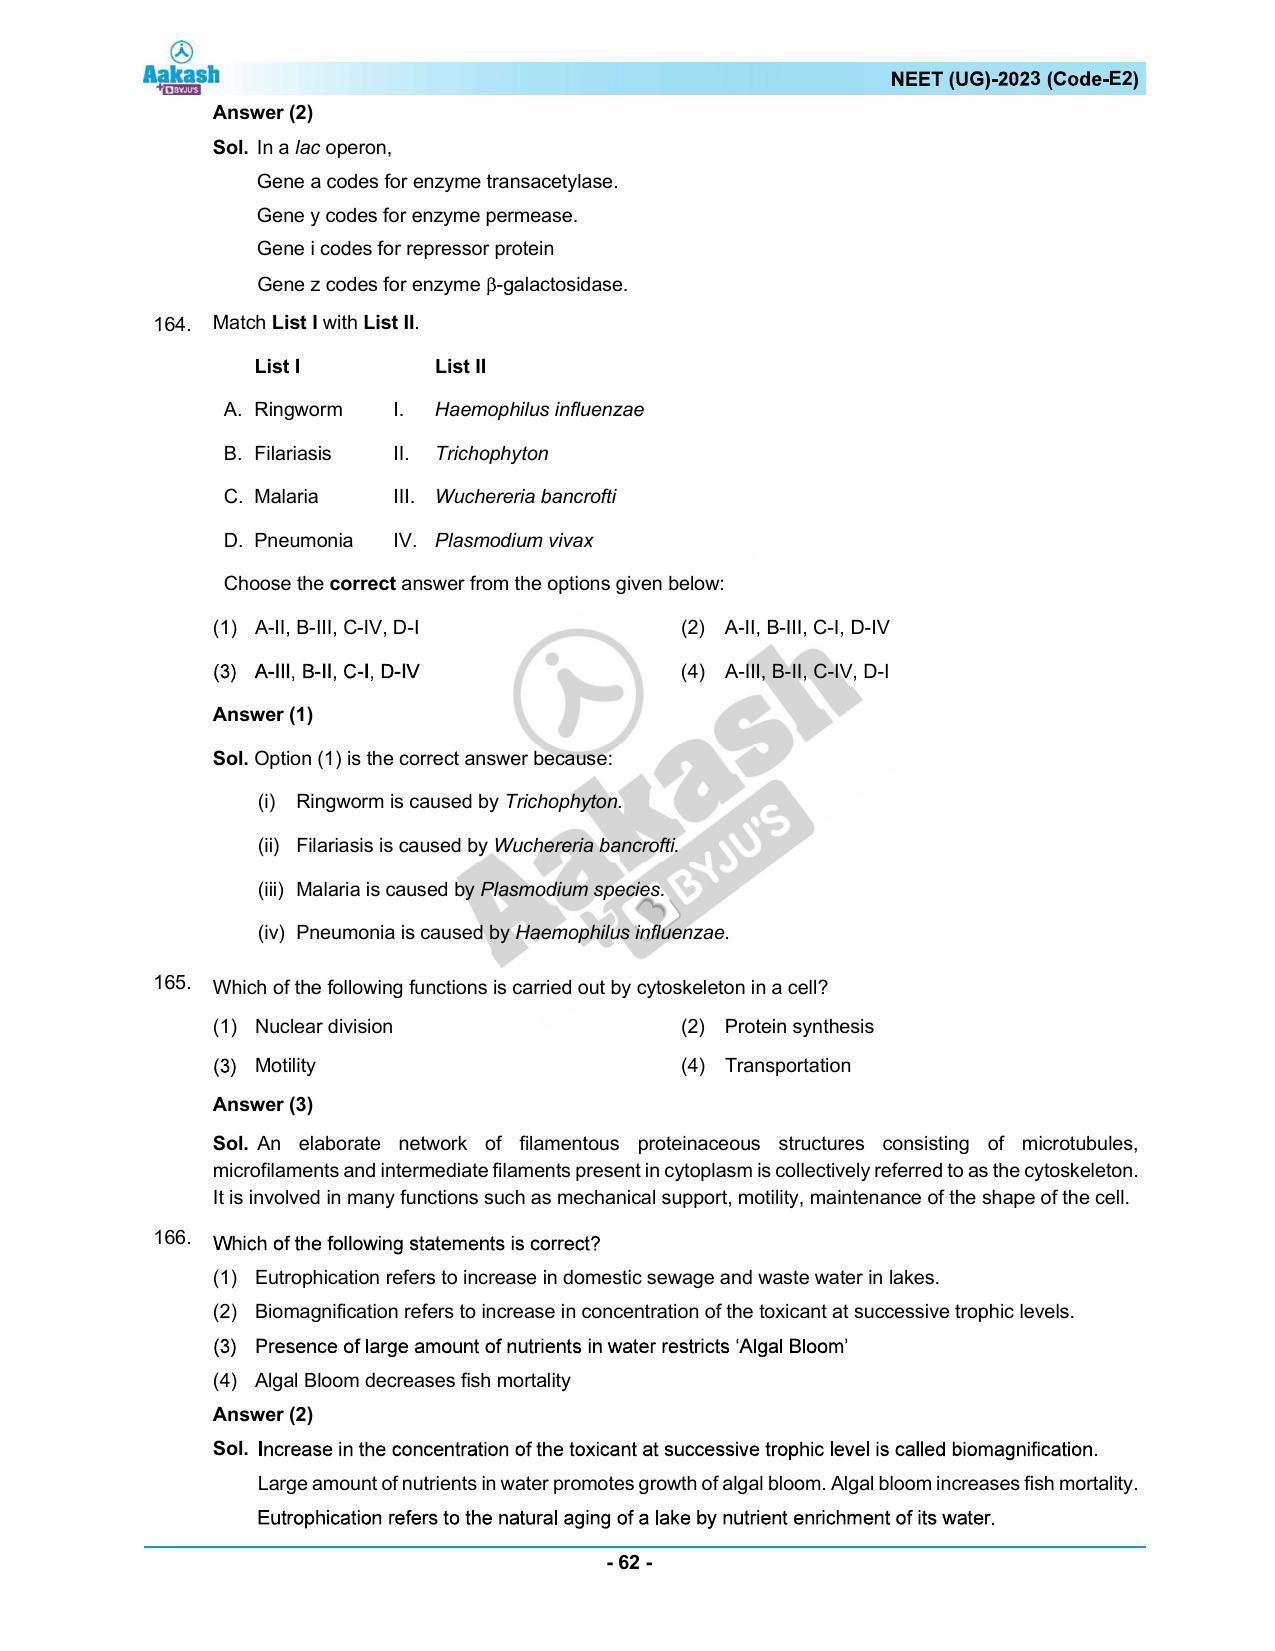 NEET 2023 Question Paper E2 - Page 62